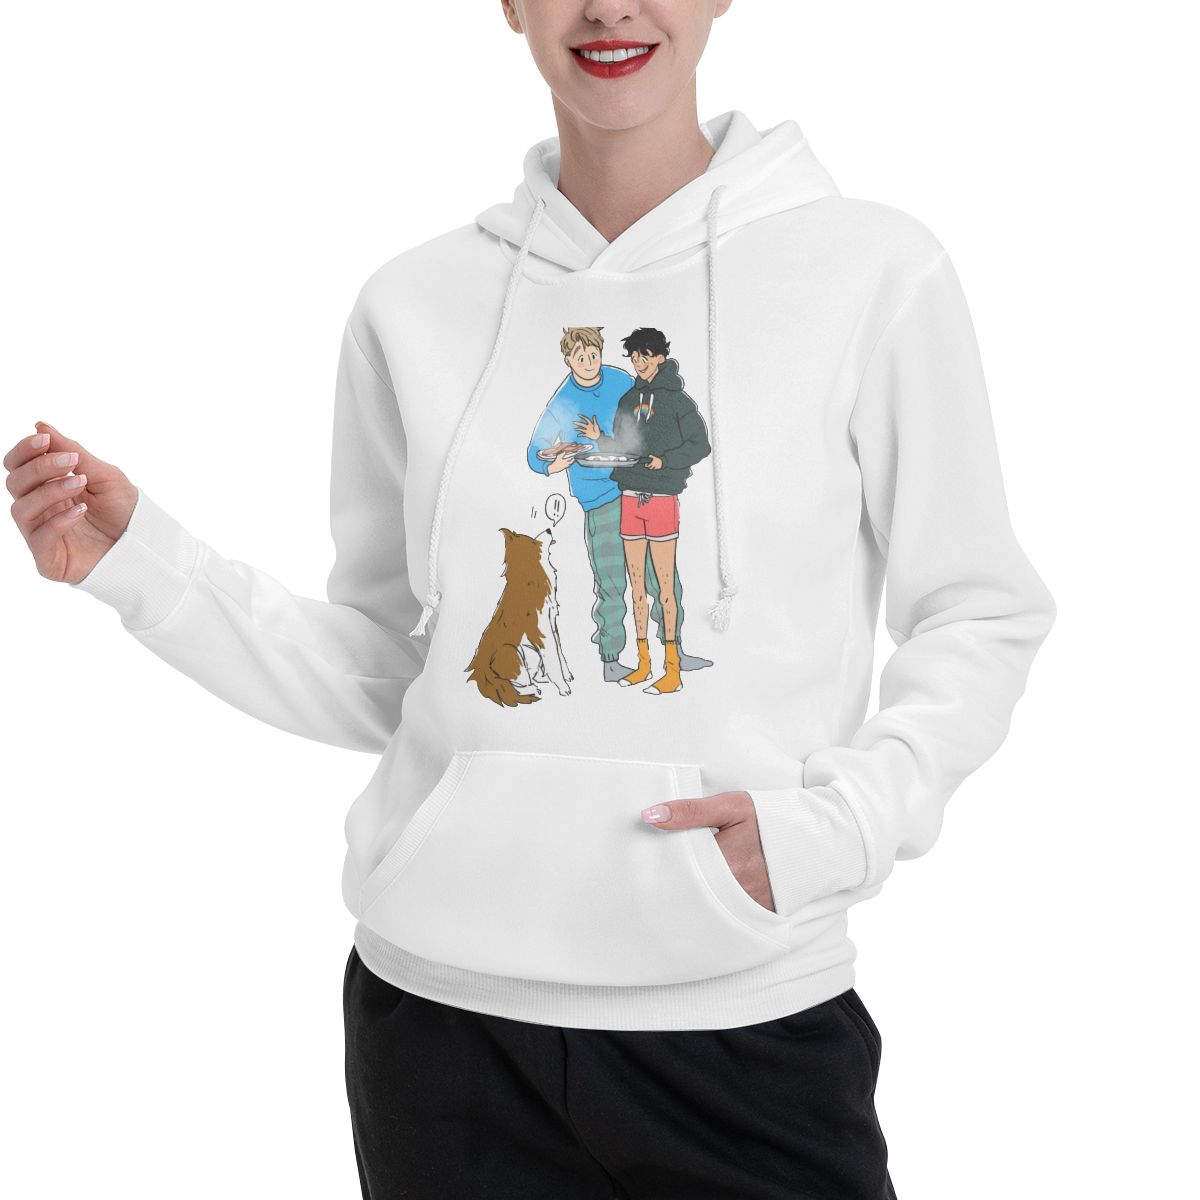 Breakfast Heartstopper Hoodies Men's Vintage Couple Sweatshirt Hooded Tops 100% Cotton Design Sweatshirt